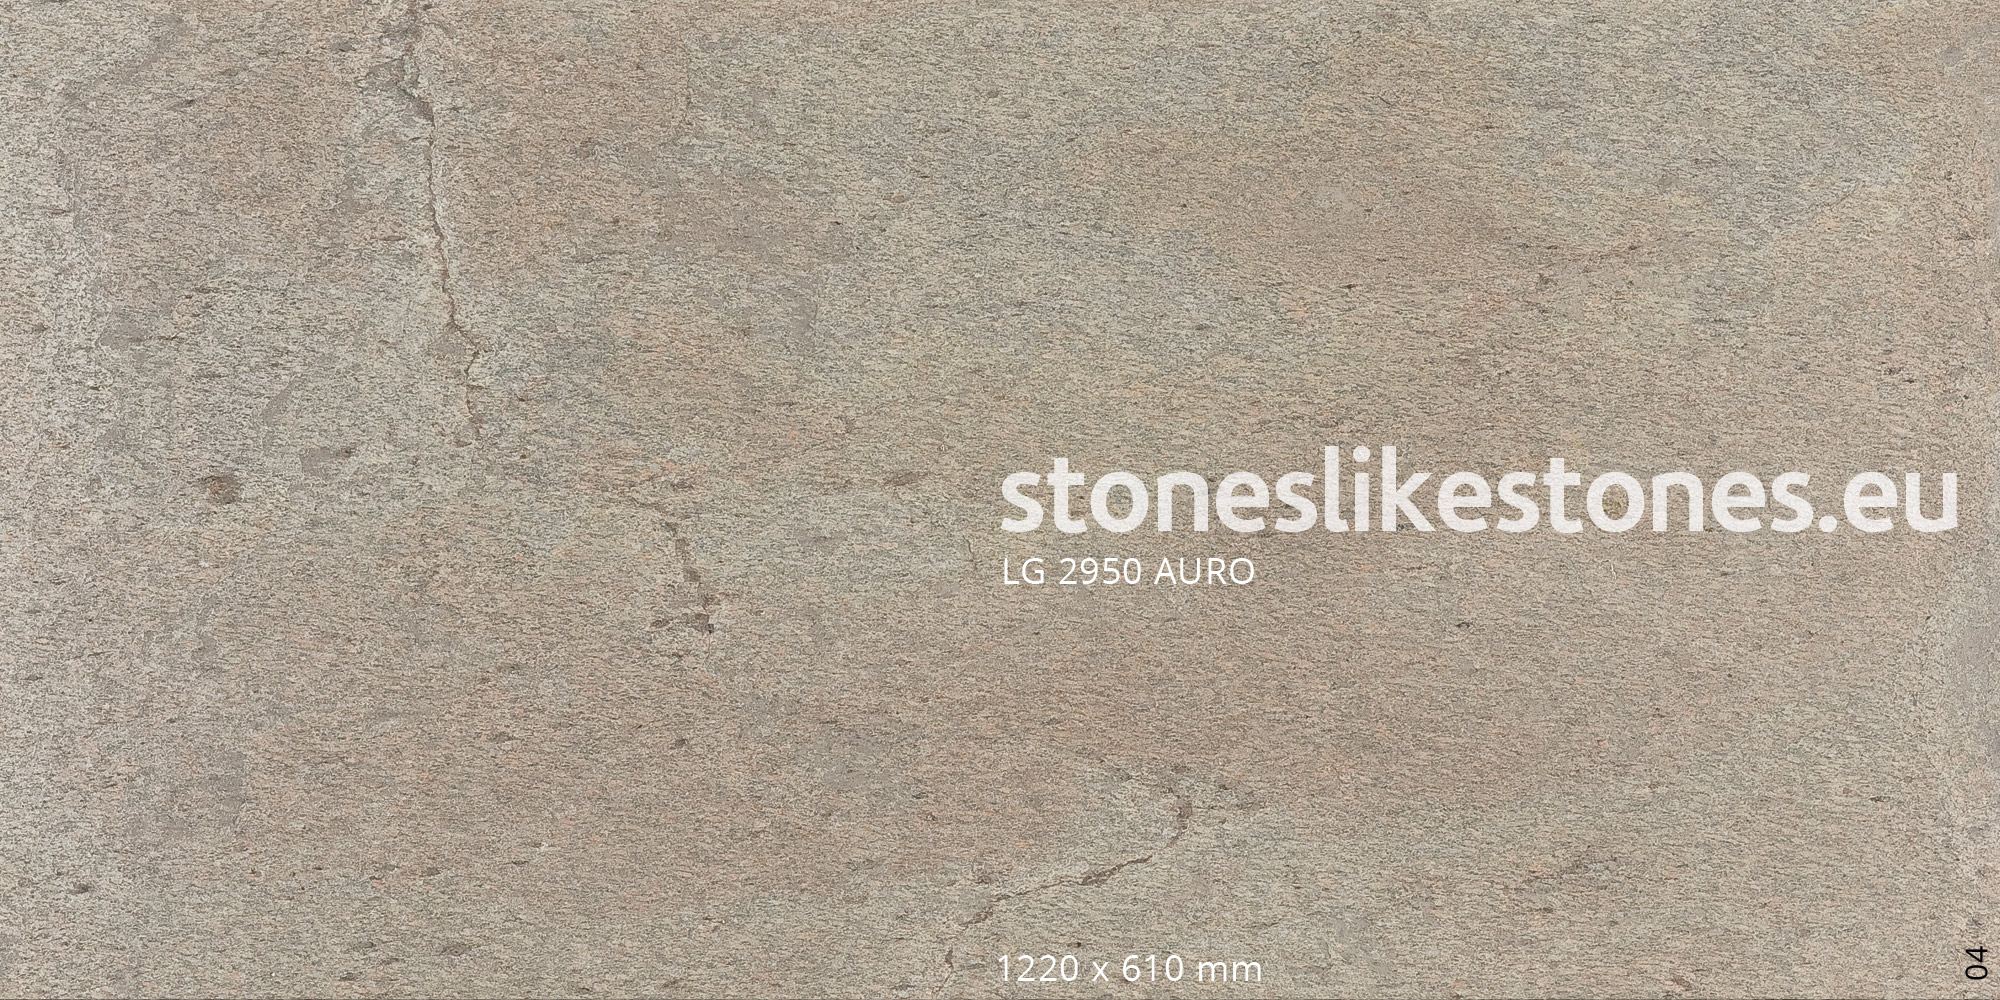 StoneslikeStones Dünnschiefer Steinfurnier LG 2950 AURO 04